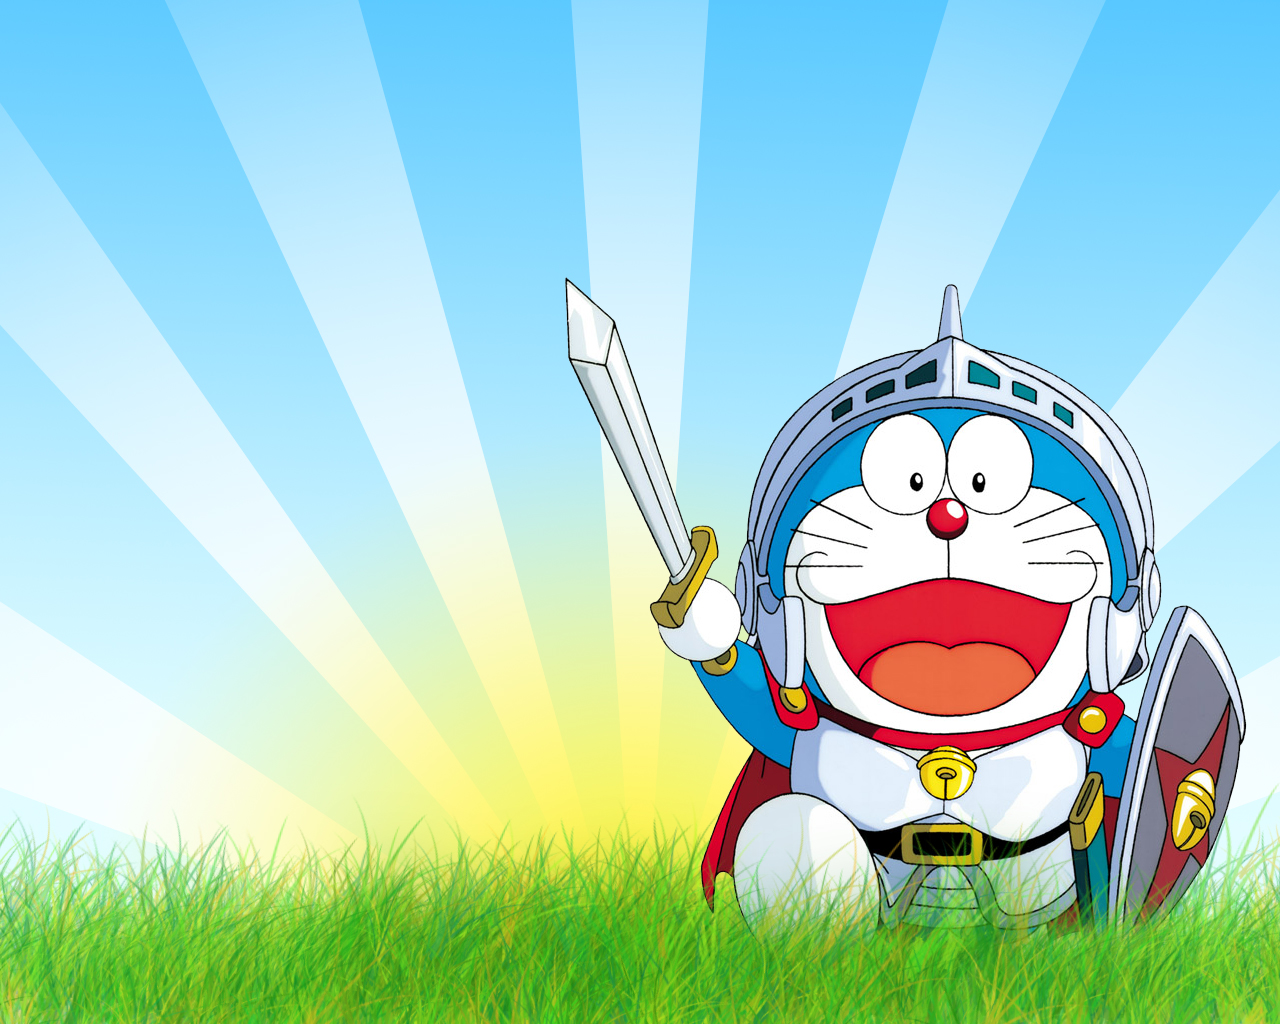 Bạn là fan của Doraemon với những câu chuyện thần kỳ và phiêu lưu tuyệt vời? Bạn muốn tải Anime Doraemon về xem miễn phí và thưởng thức chú mèo máy thông minh này? Hãy nhanh tay thực hiện điều đó với một vài cú click chuột và trải nghiệm ngay với những phiên bản Anime Doraemon mới nhất.